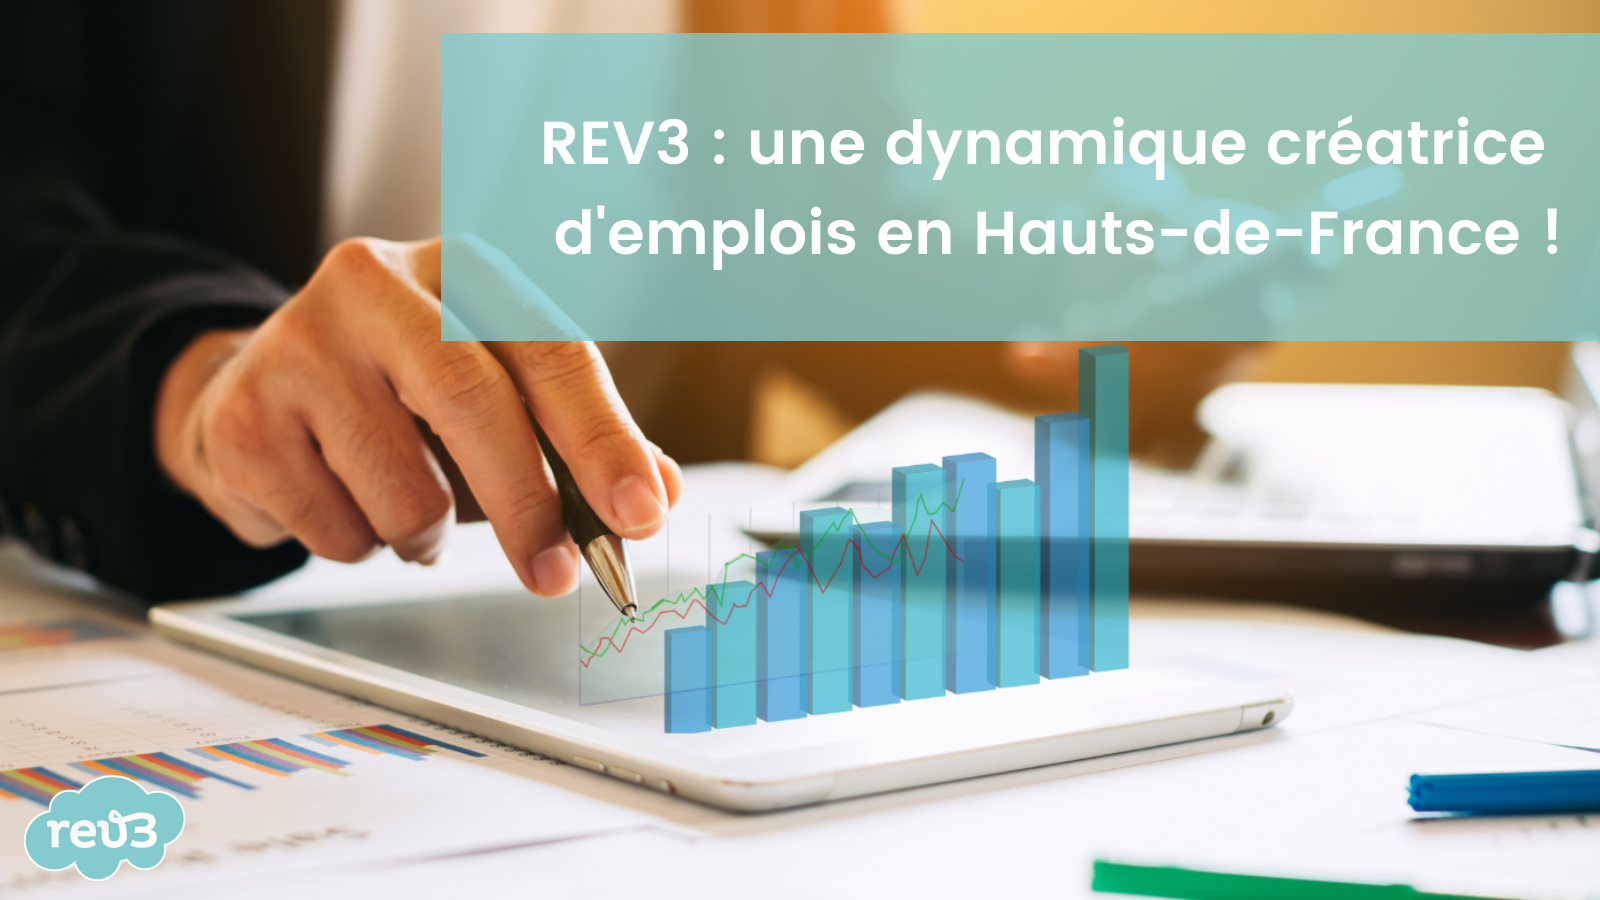 Rev3 : une dynamique créatrice d'emplois dans les Hauts-de-France